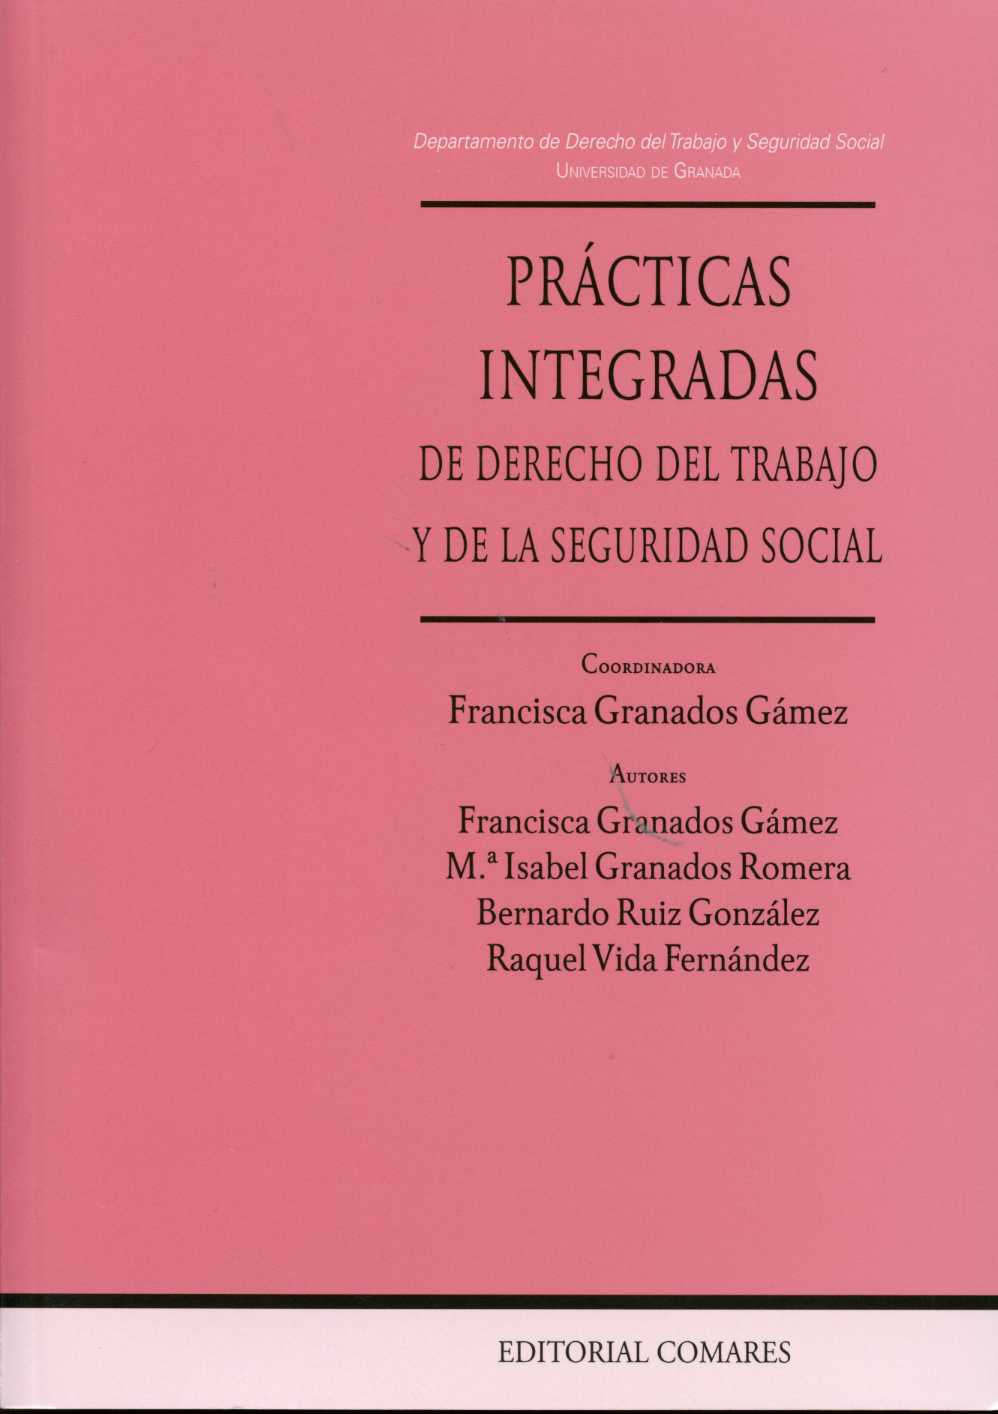 Practicas integradas de Derecho del Trabajo y de la Seguridad Social